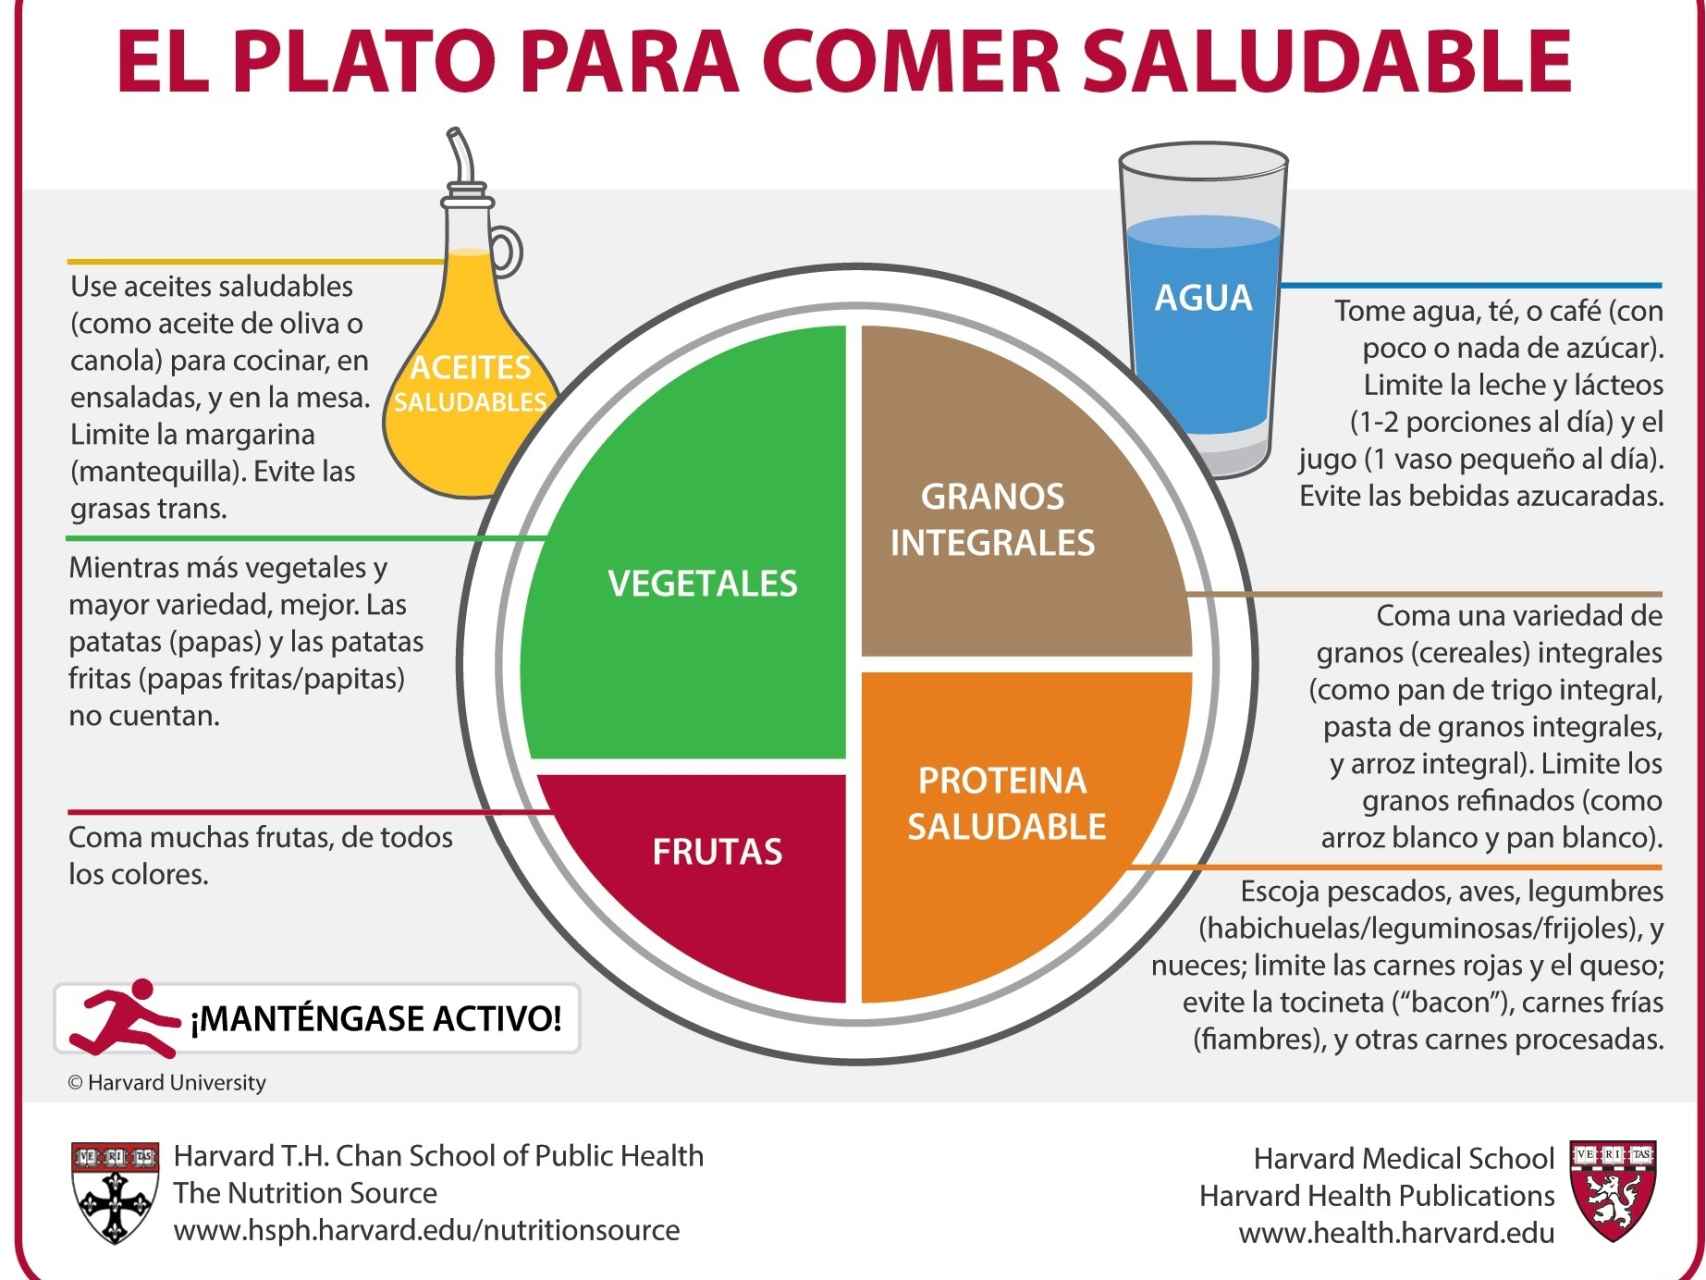 El Plato para Comer Saludable elaborado por investigadores de la Universidad de Harvard.